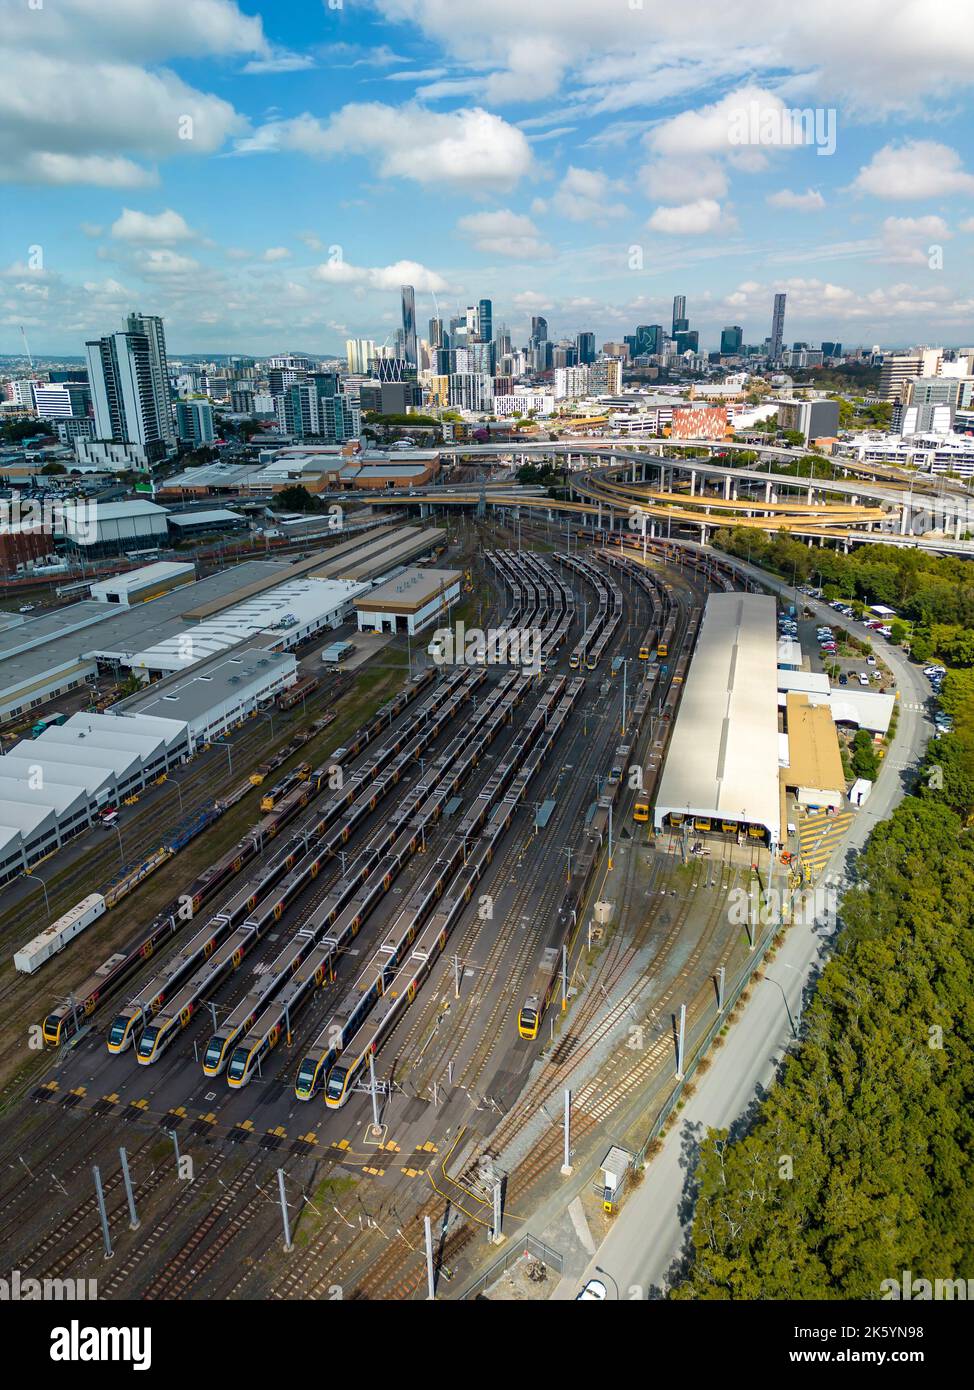 Vue verticale aérienne du dépôt de trains à Brisbane, Australie Banque D'Images